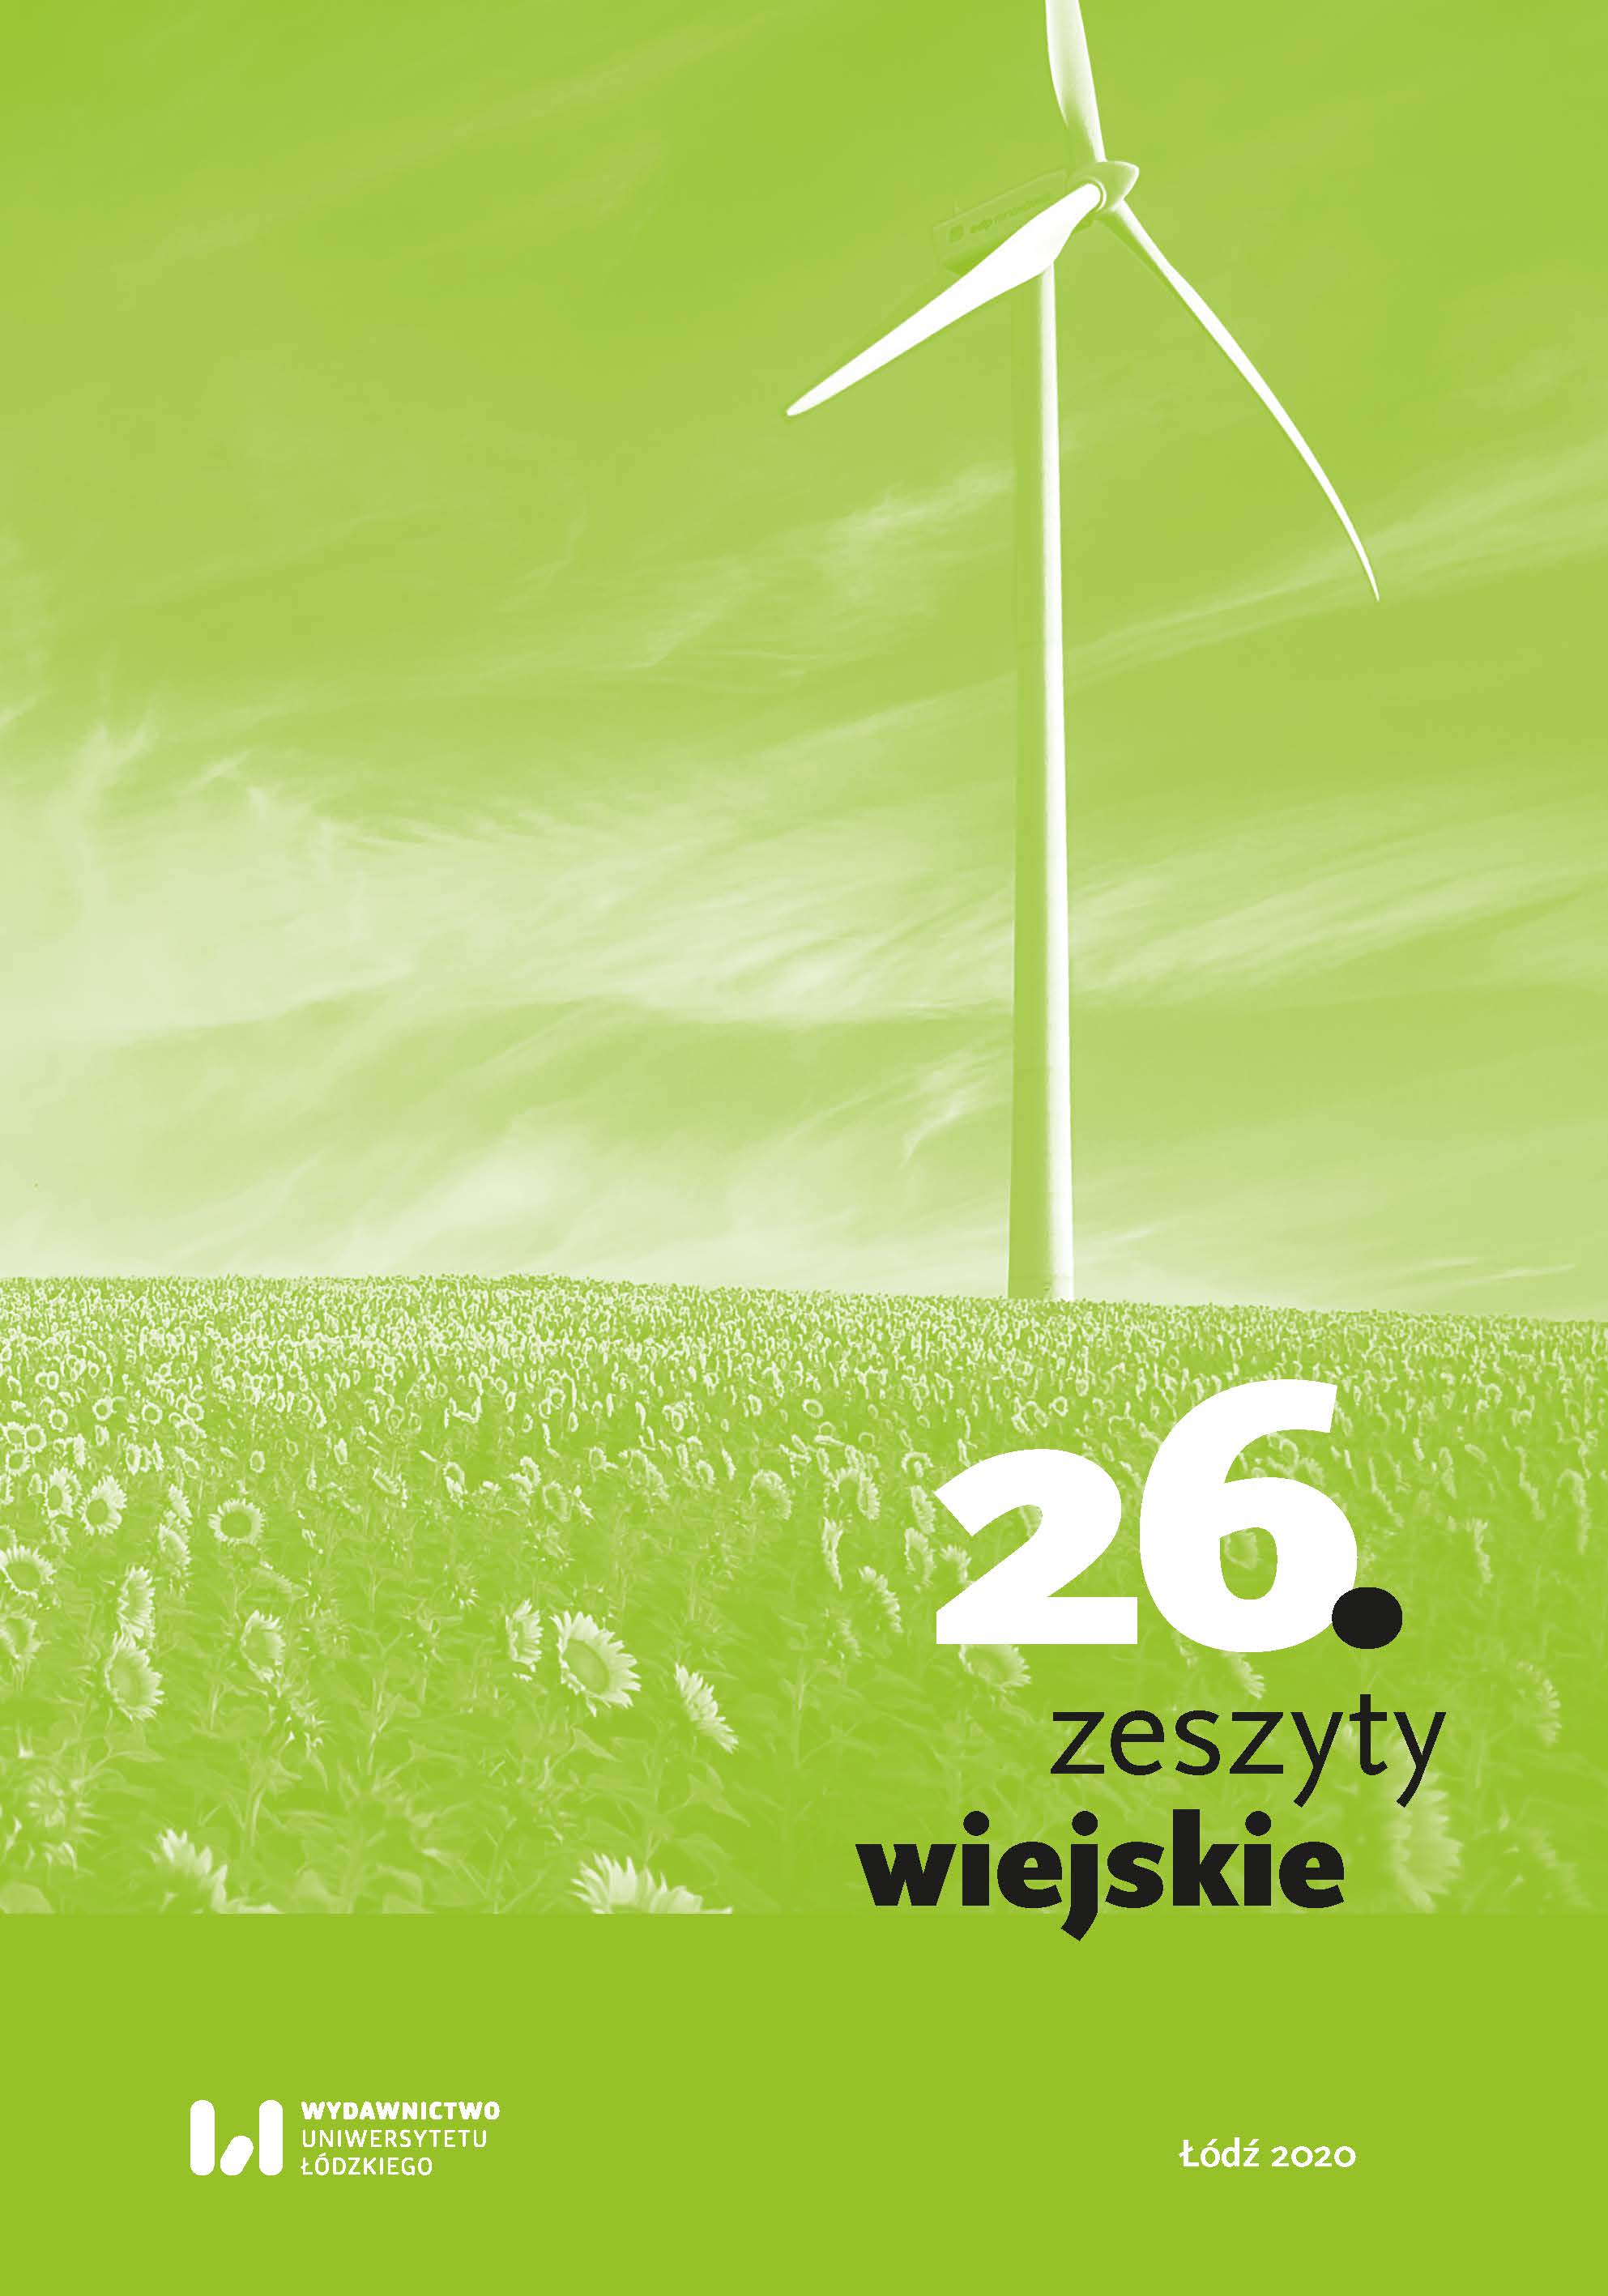 The Latest Publications of Muzeum Historii Polskiego Ruchu Ludowego Cover Image